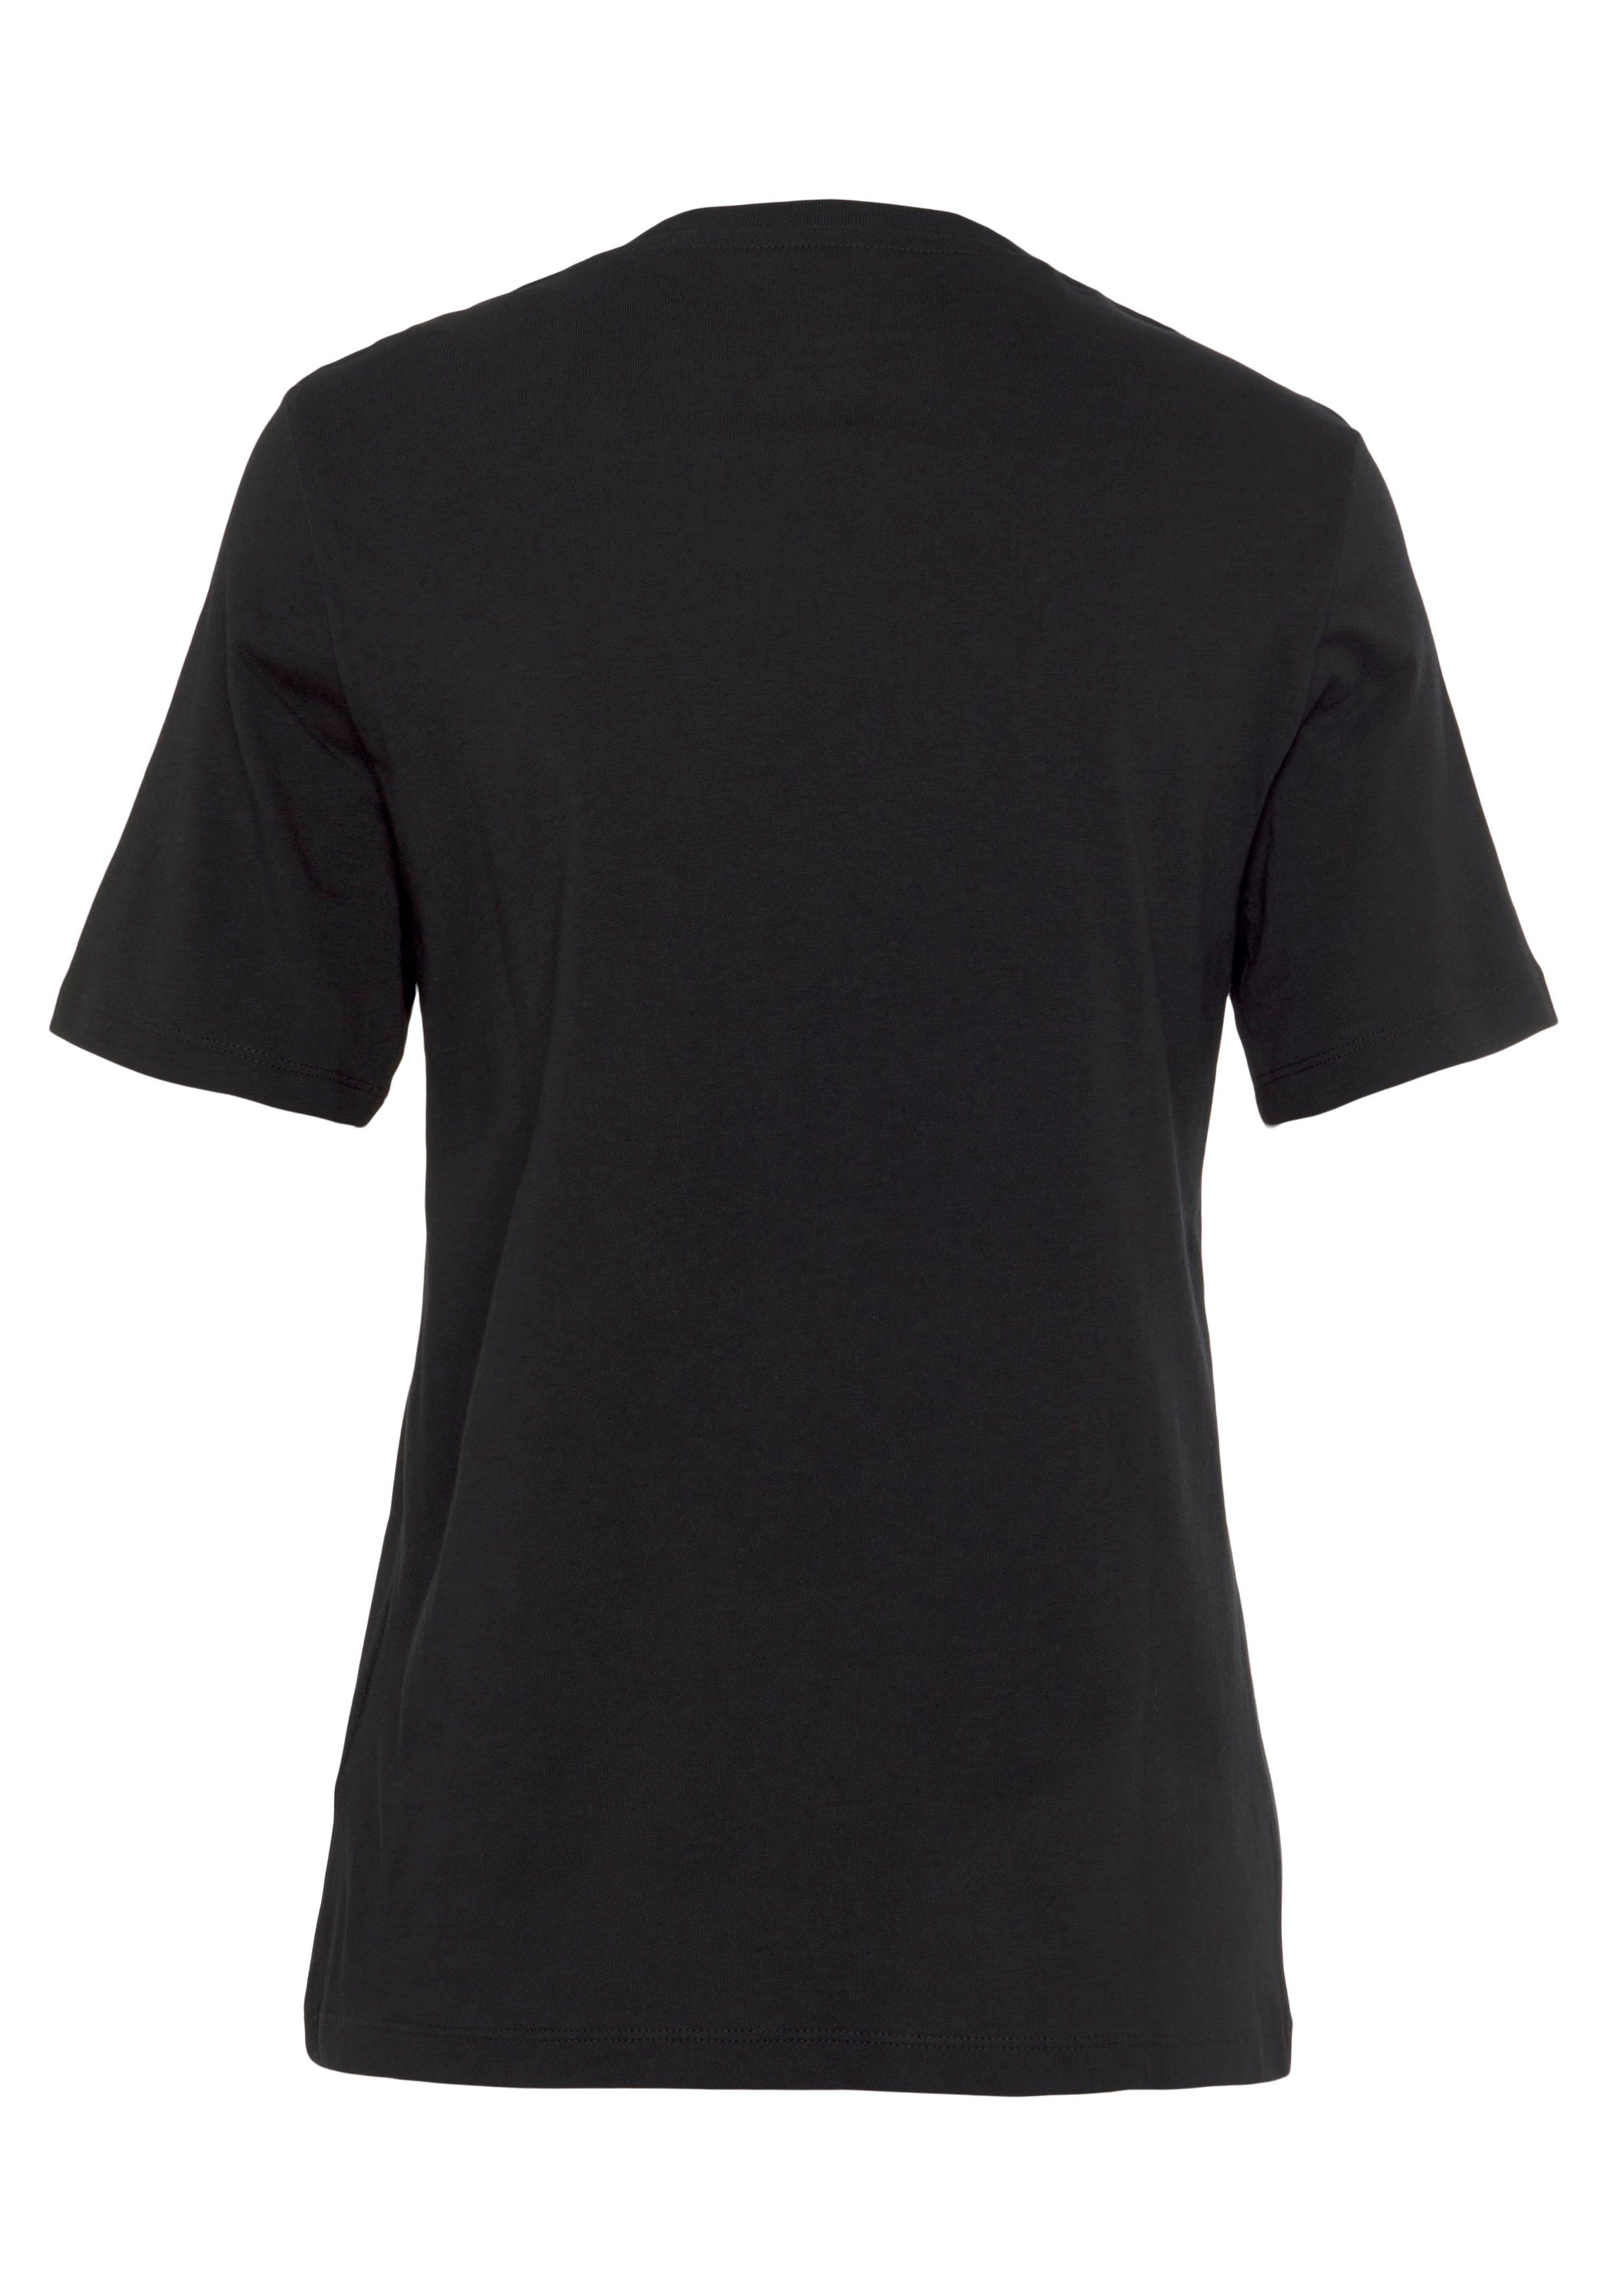 Reebok RI Tee BL black T-Shirt